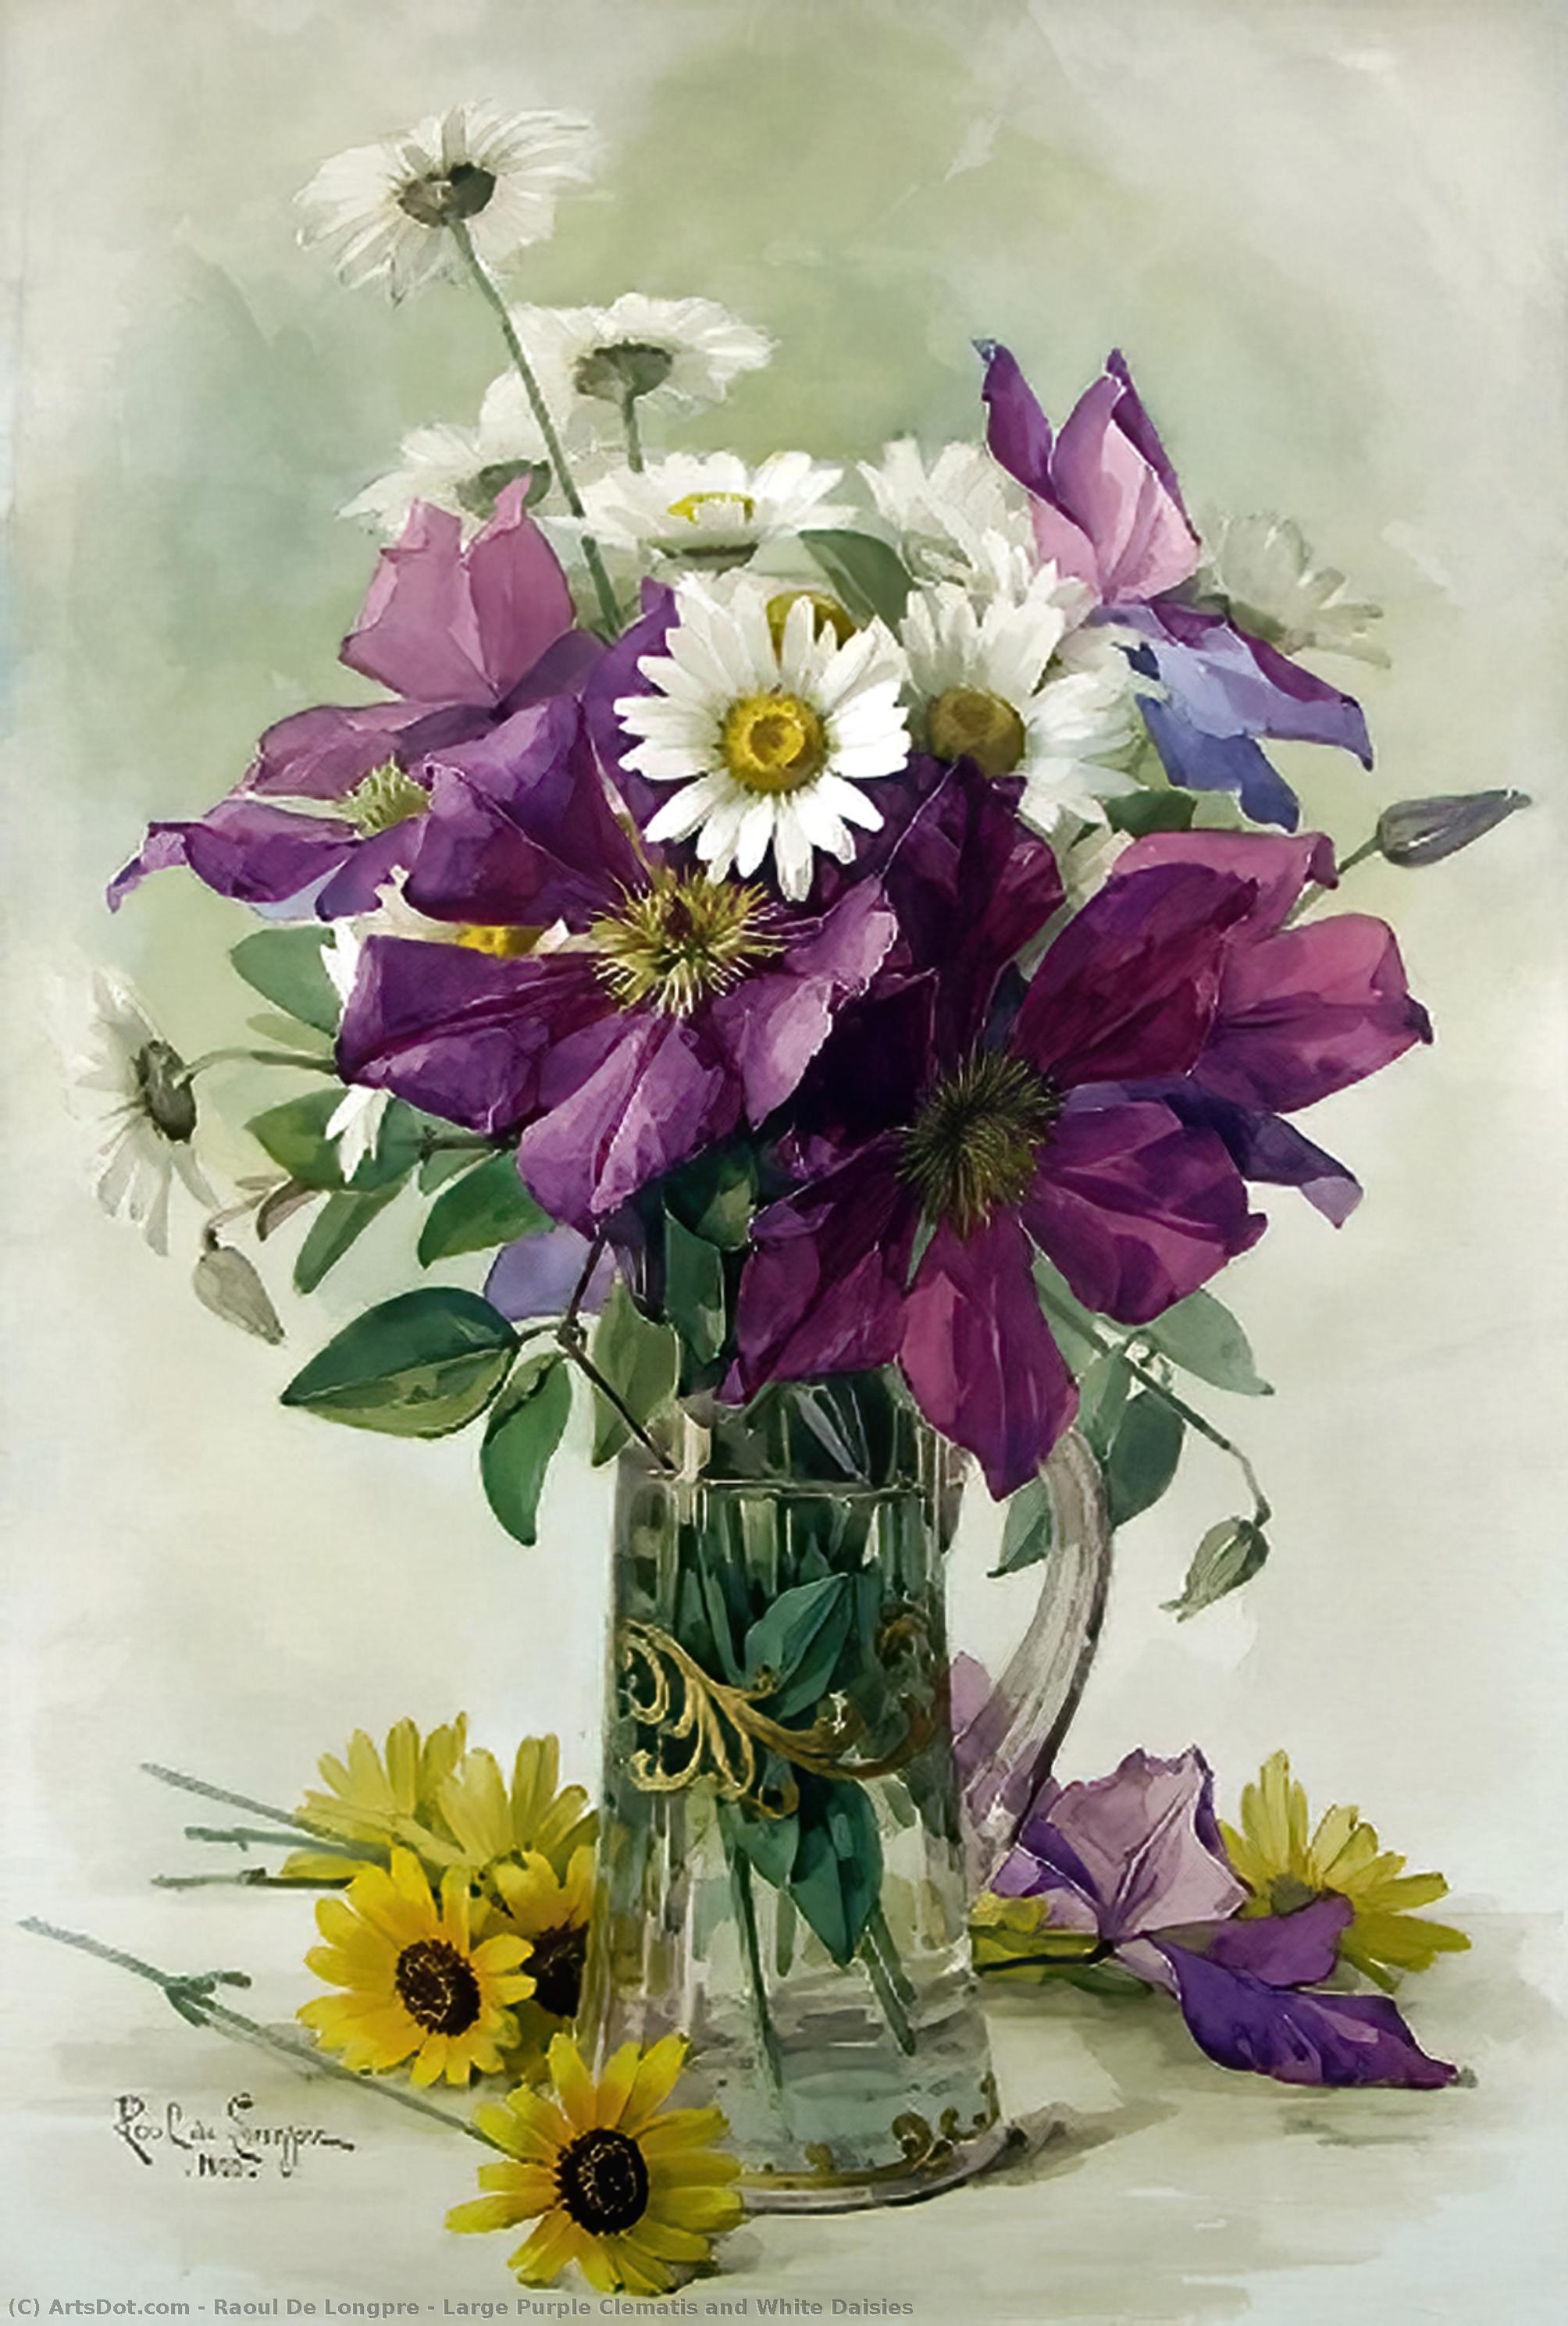 Wikioo.org - Bách khoa toàn thư về mỹ thuật - Vẽ tranh, Tác phẩm nghệ thuật Raoul De Longpre - Large Purple Clematis and White Daisies